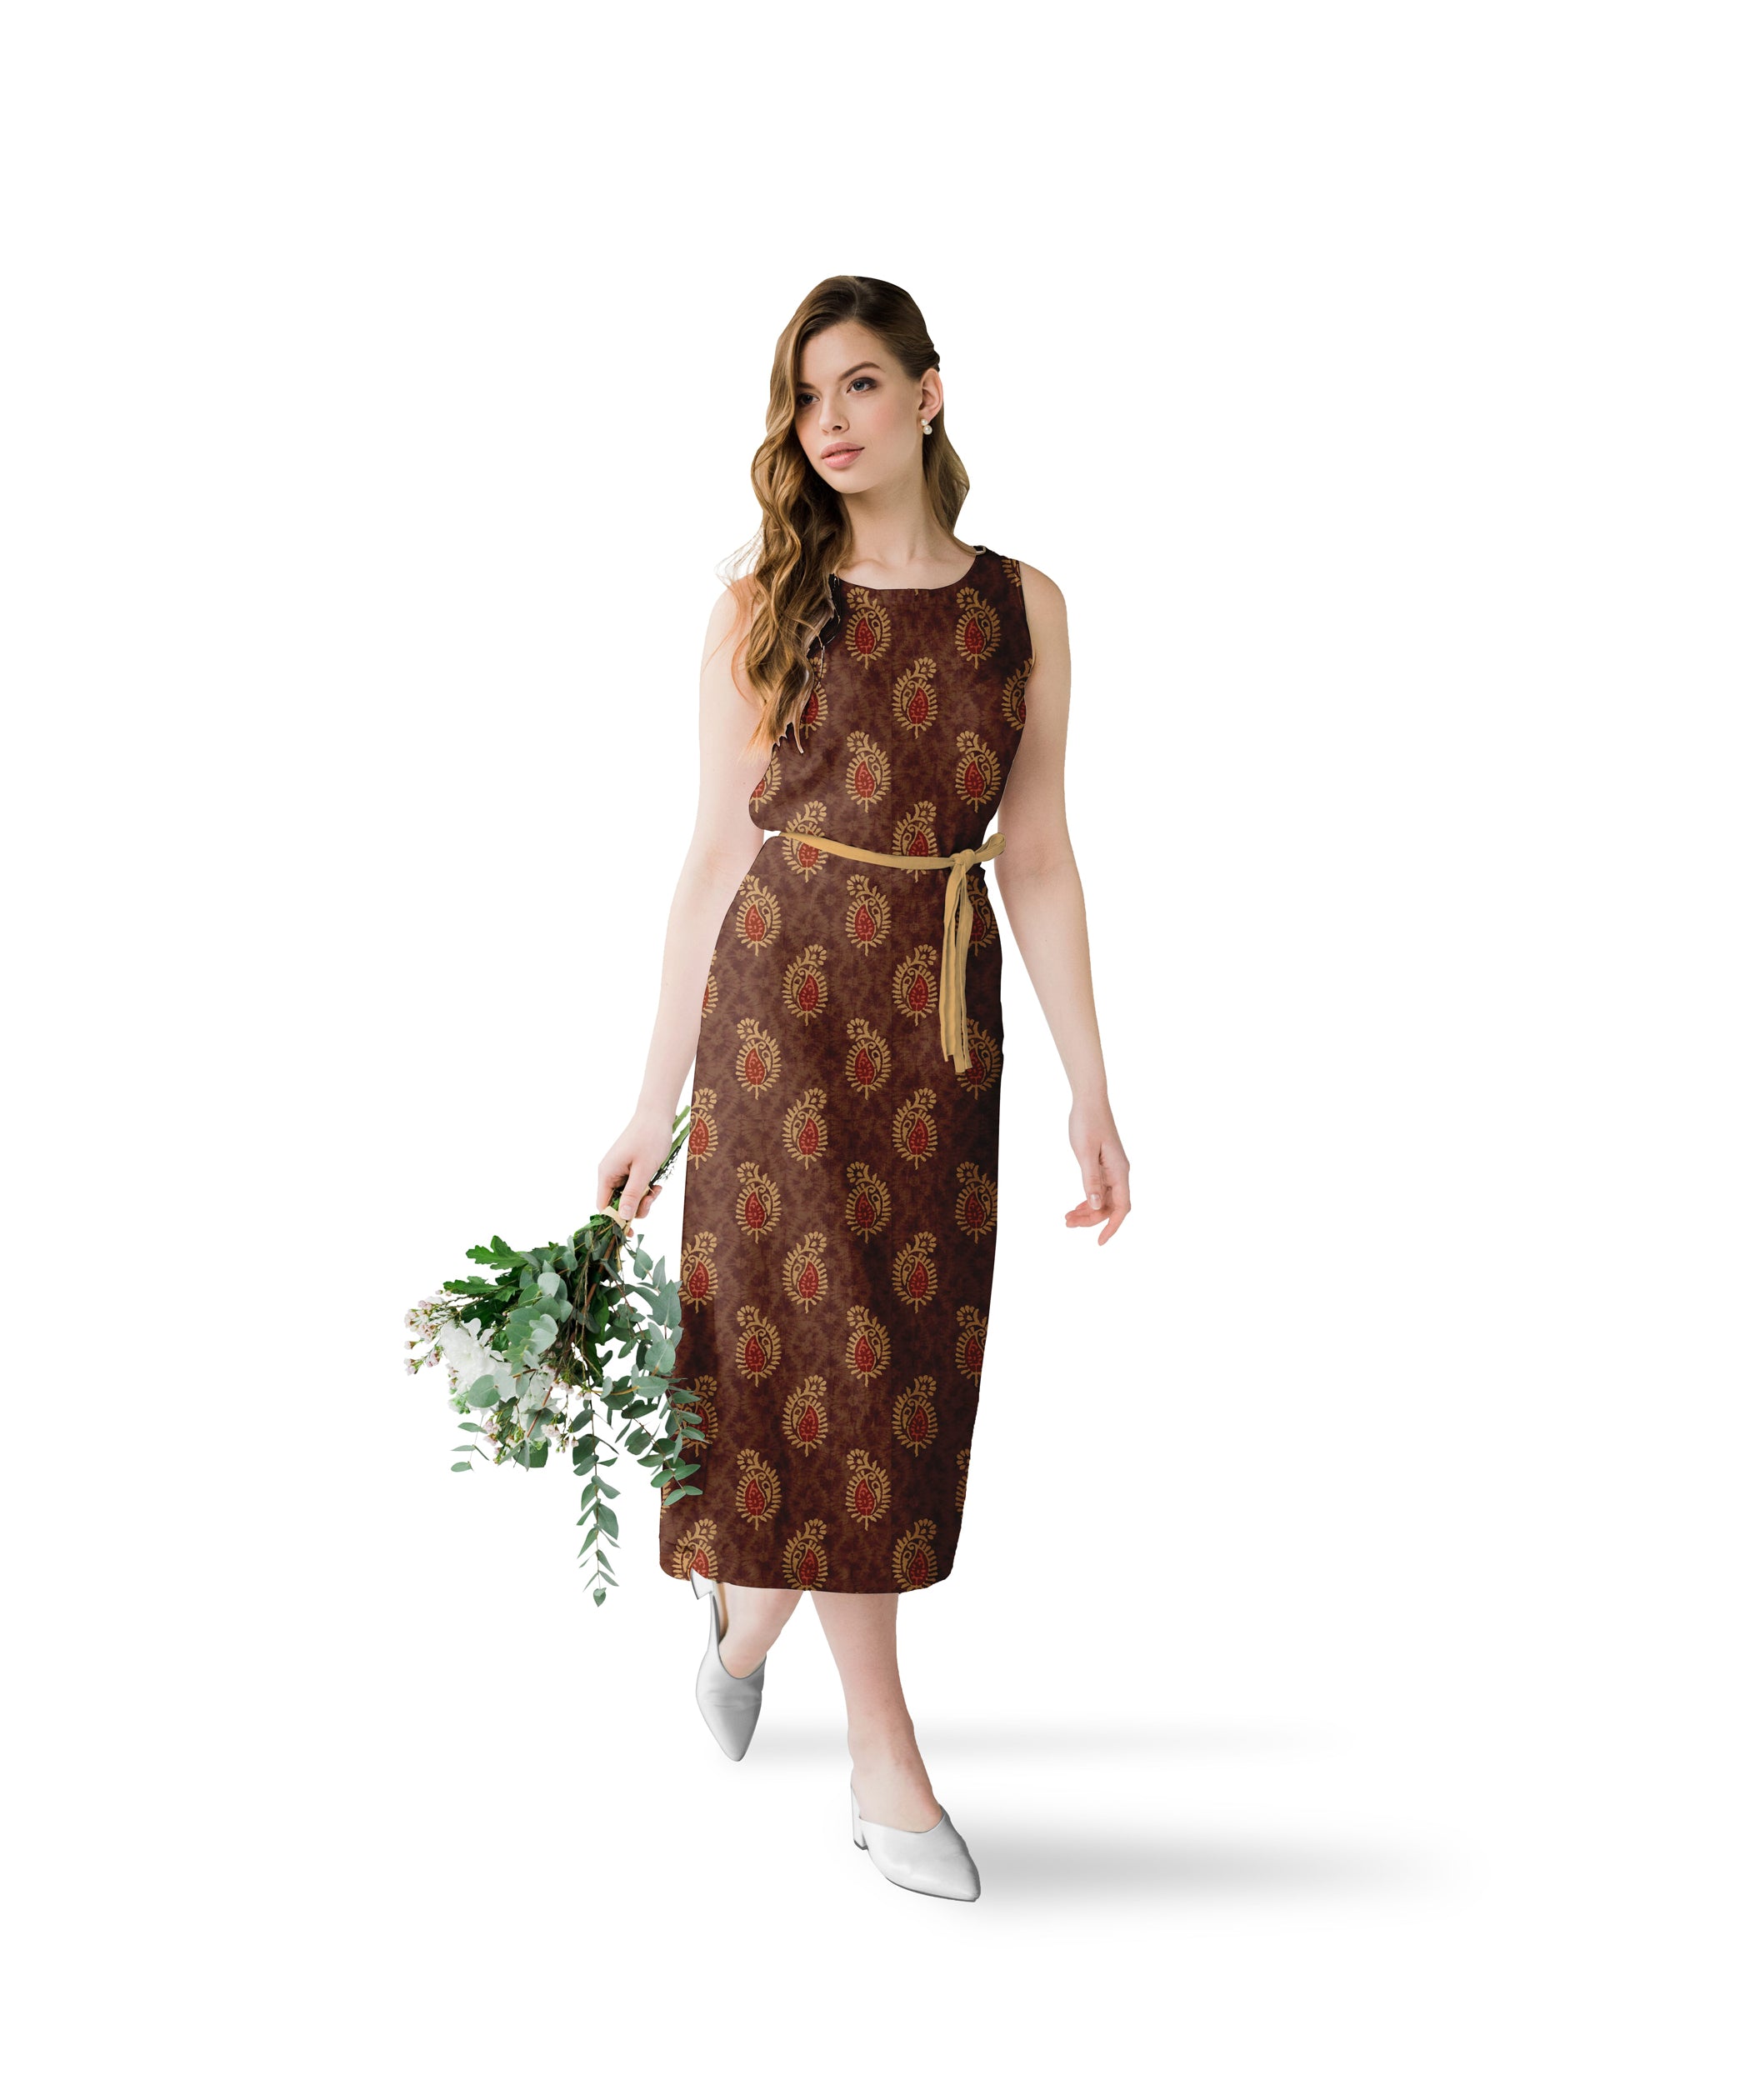 Copper Brown-Shibori with Batik Print